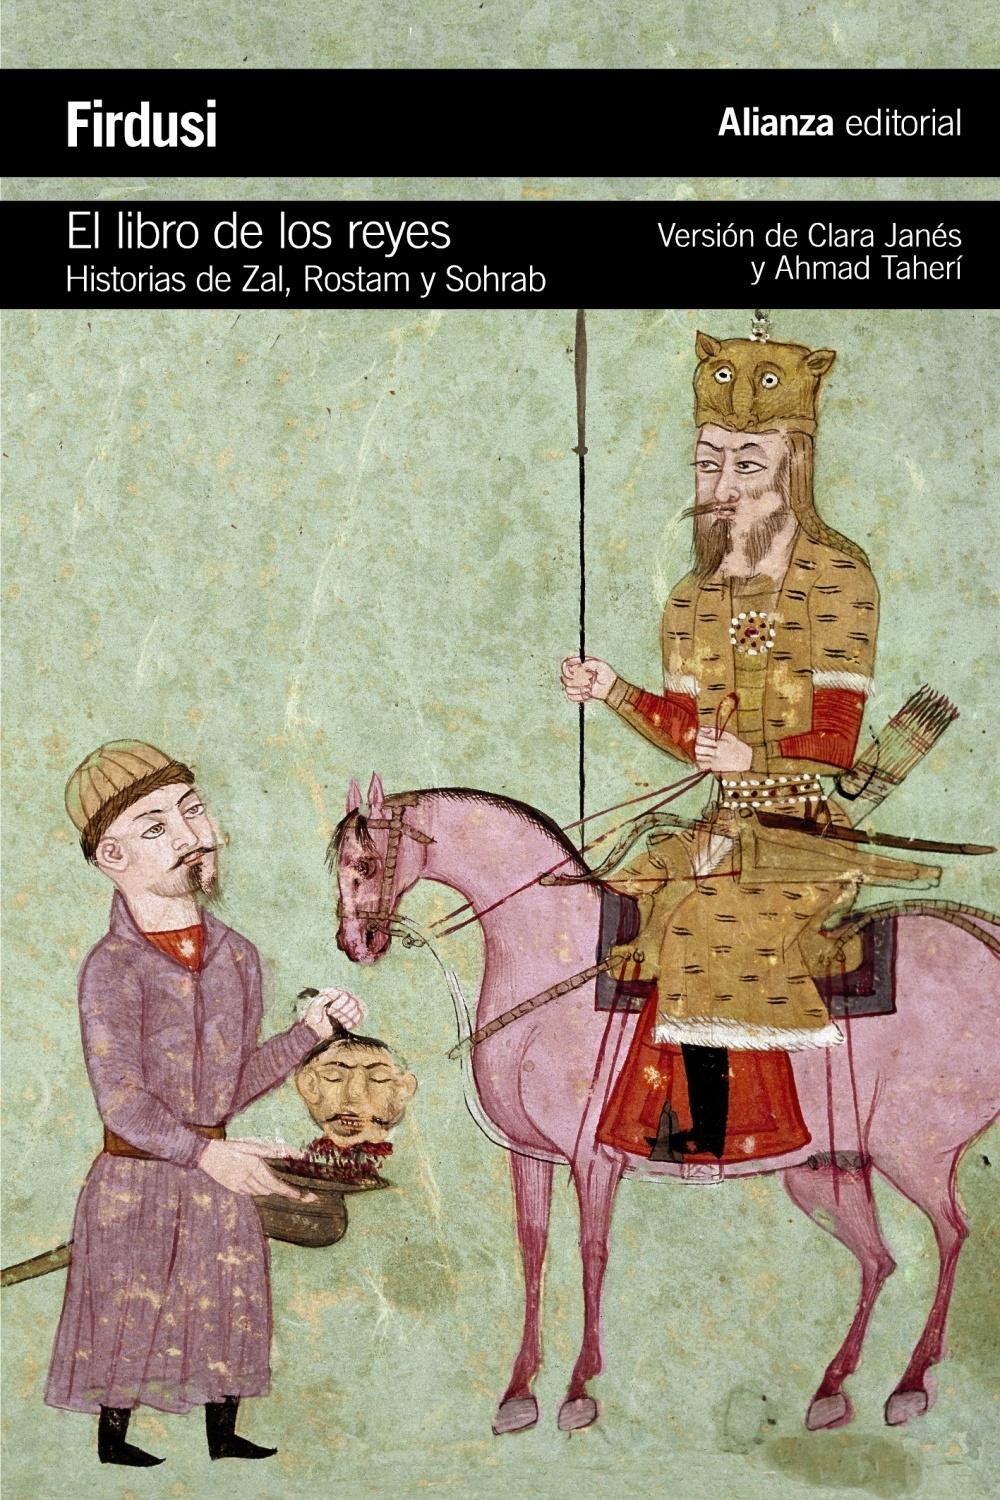 El libro de los reyes "Historias de Zal, Rostam y Sohrab"